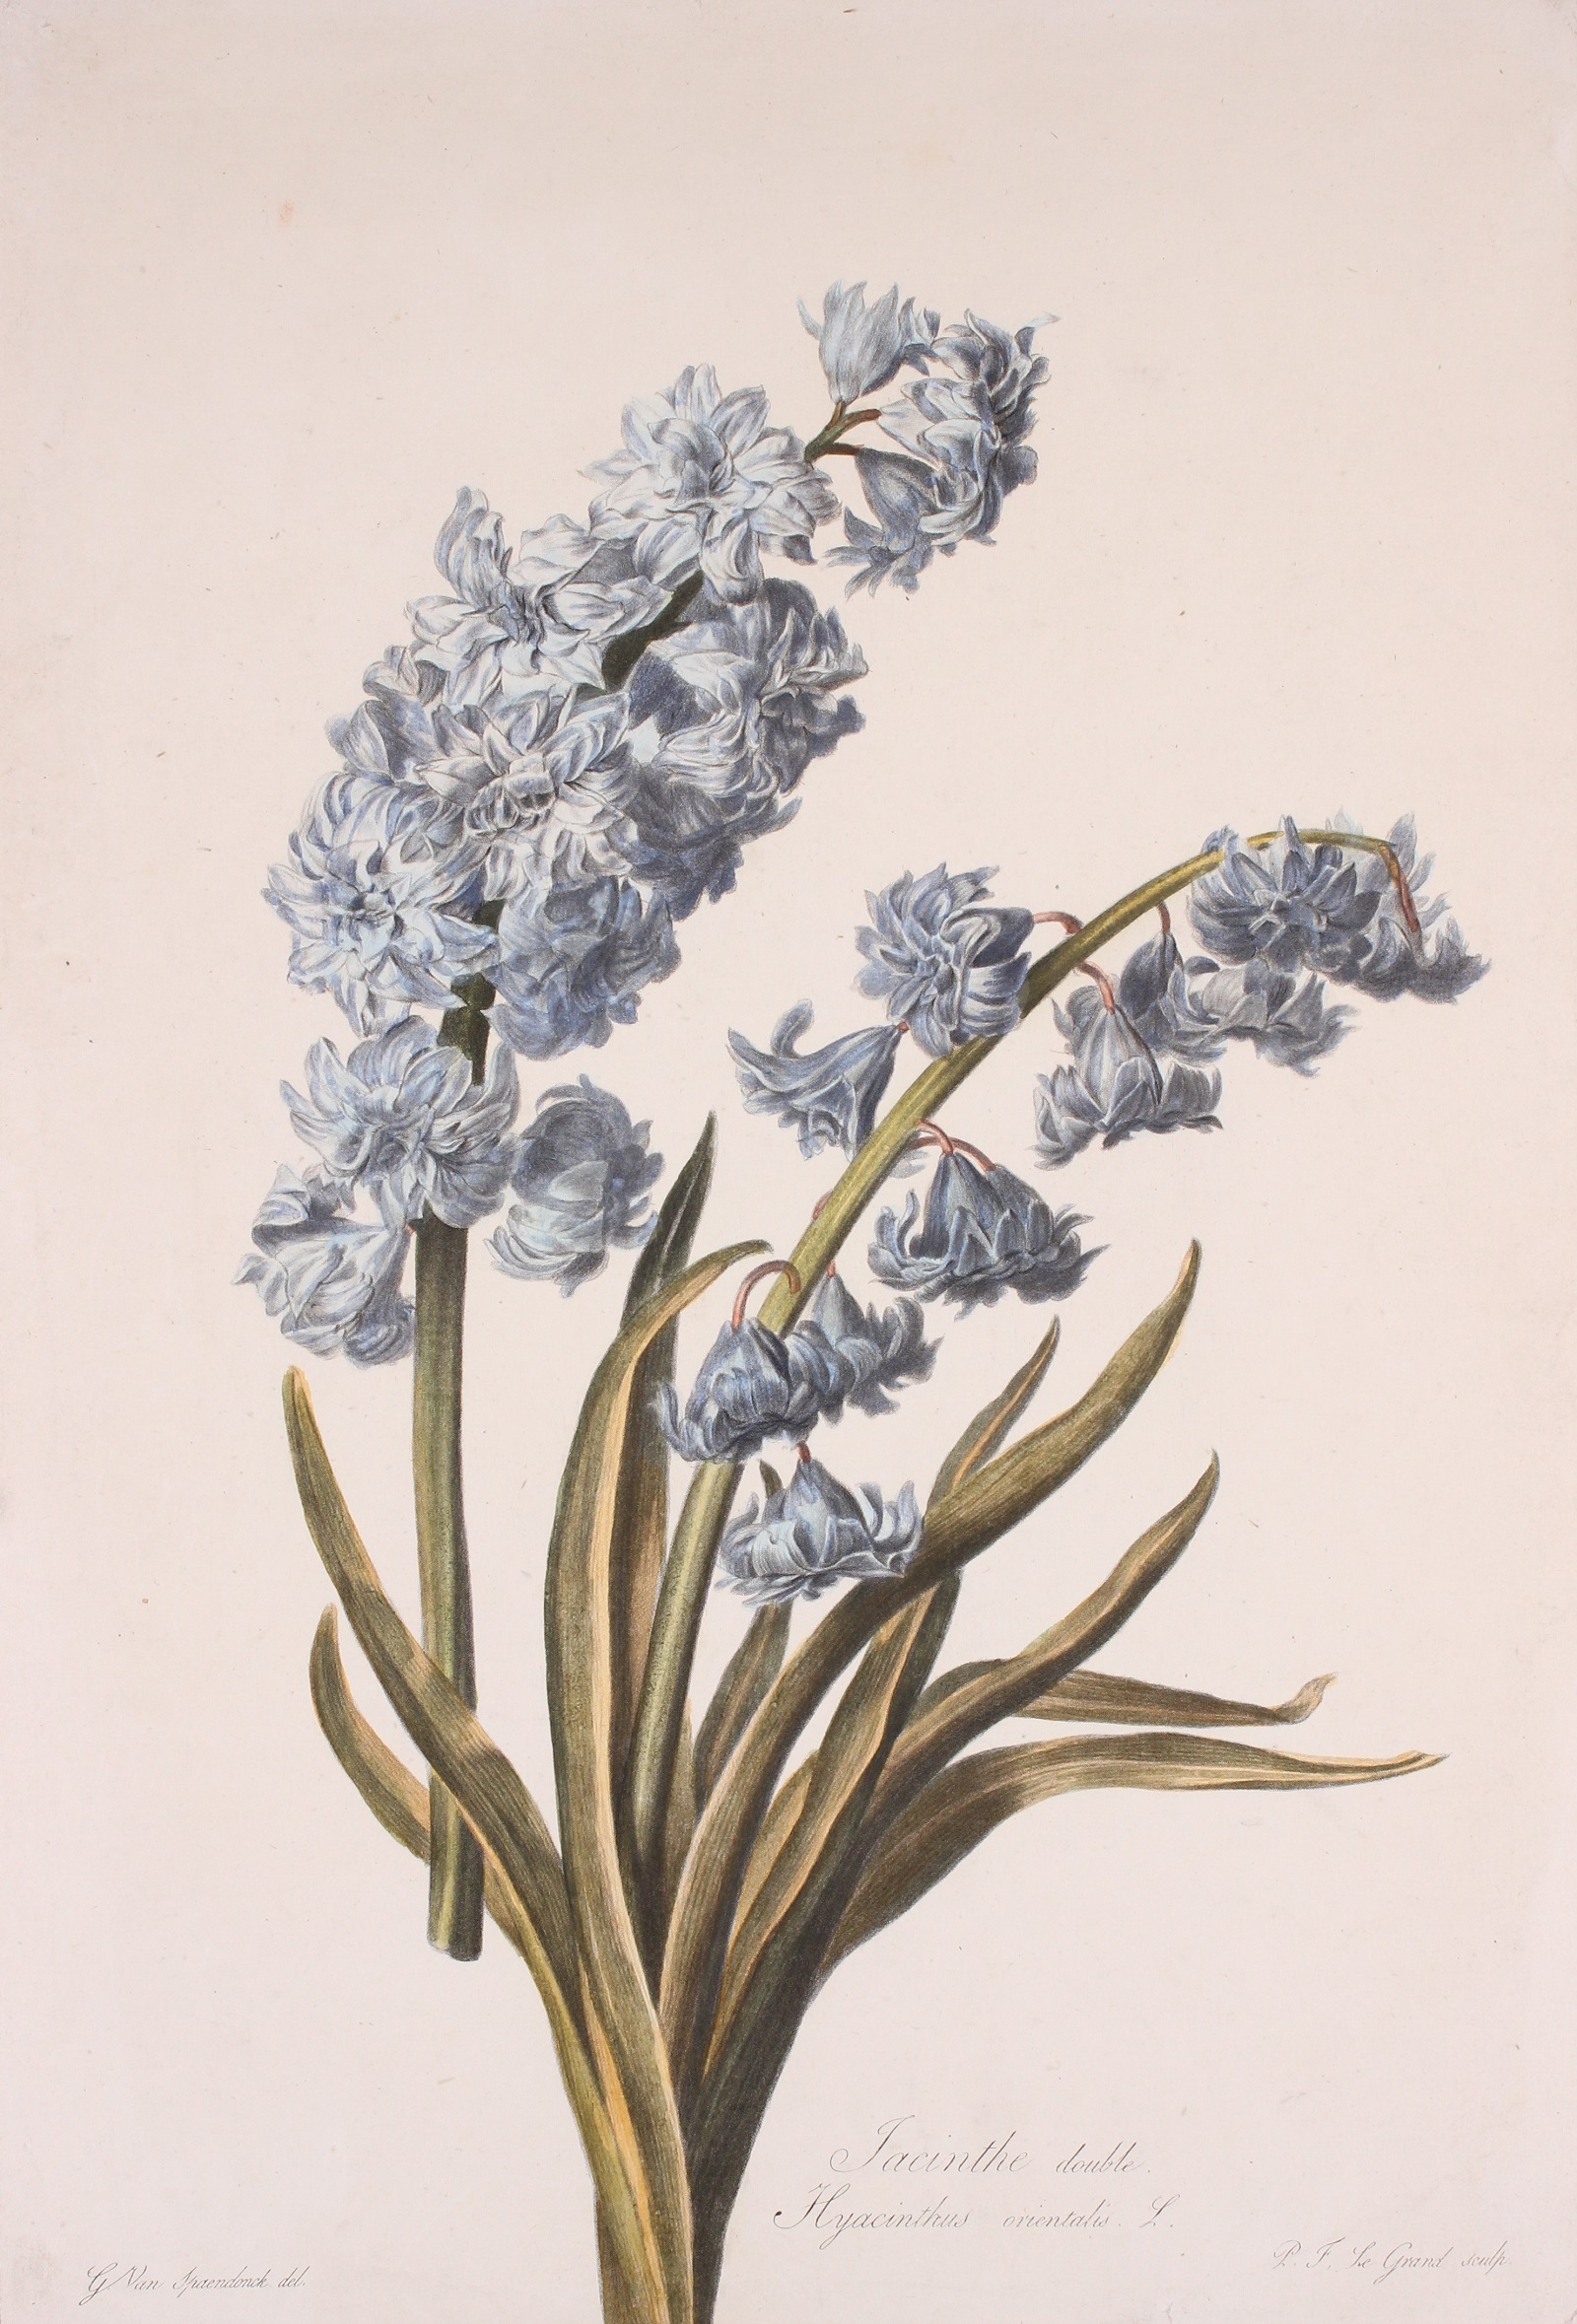 Spaendonck-- Gerard van (1756-1840) - Dutch hyacinth - Gerard van Spaendonck, 1799-1801